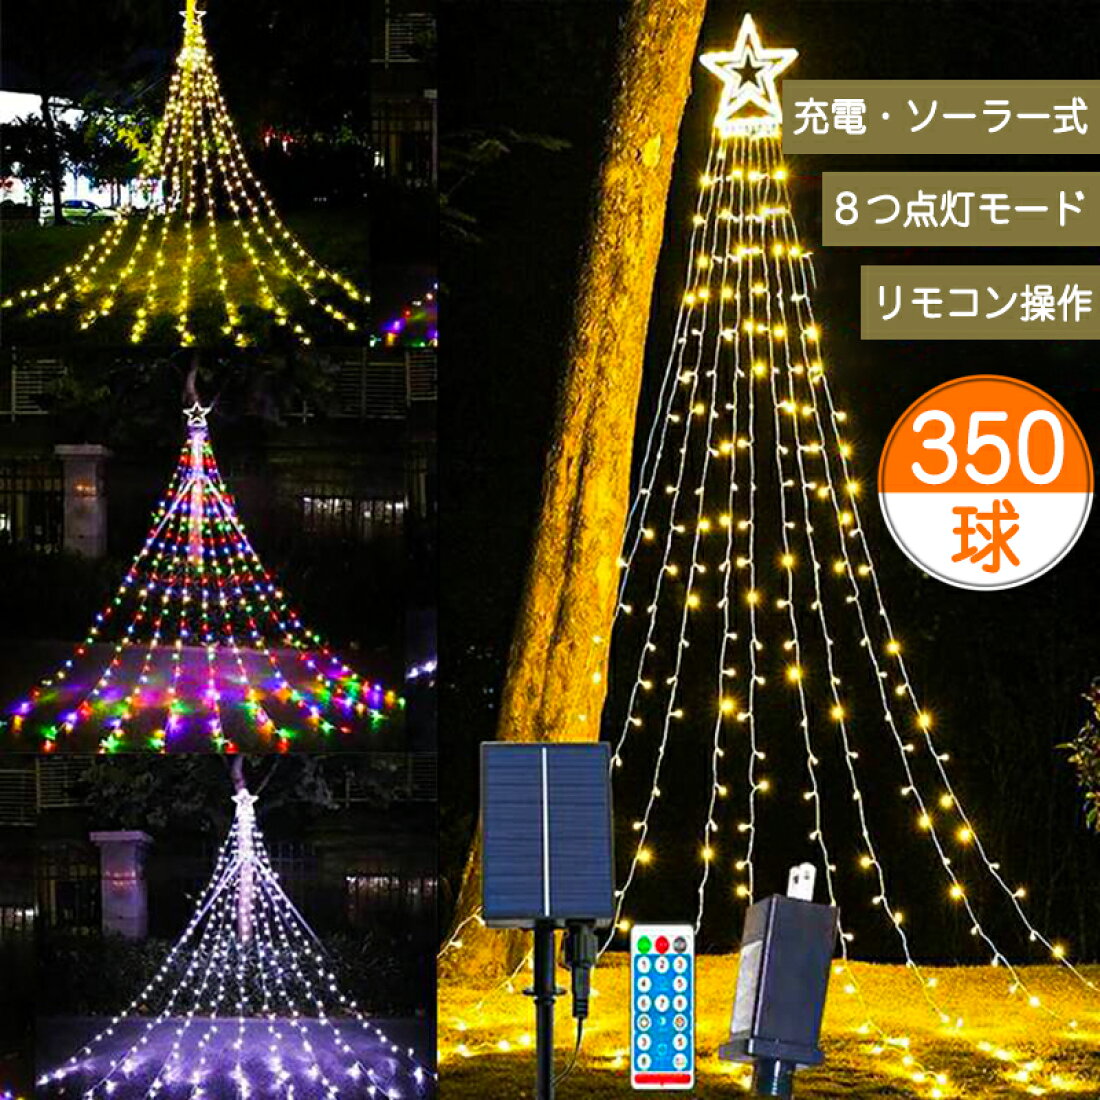 最新デザインの クリスマス飾りライト ハロウィンの祭りLEDイルミネーション ライト電池式 イベント用飾り パーティデコレーション 4M 40球 